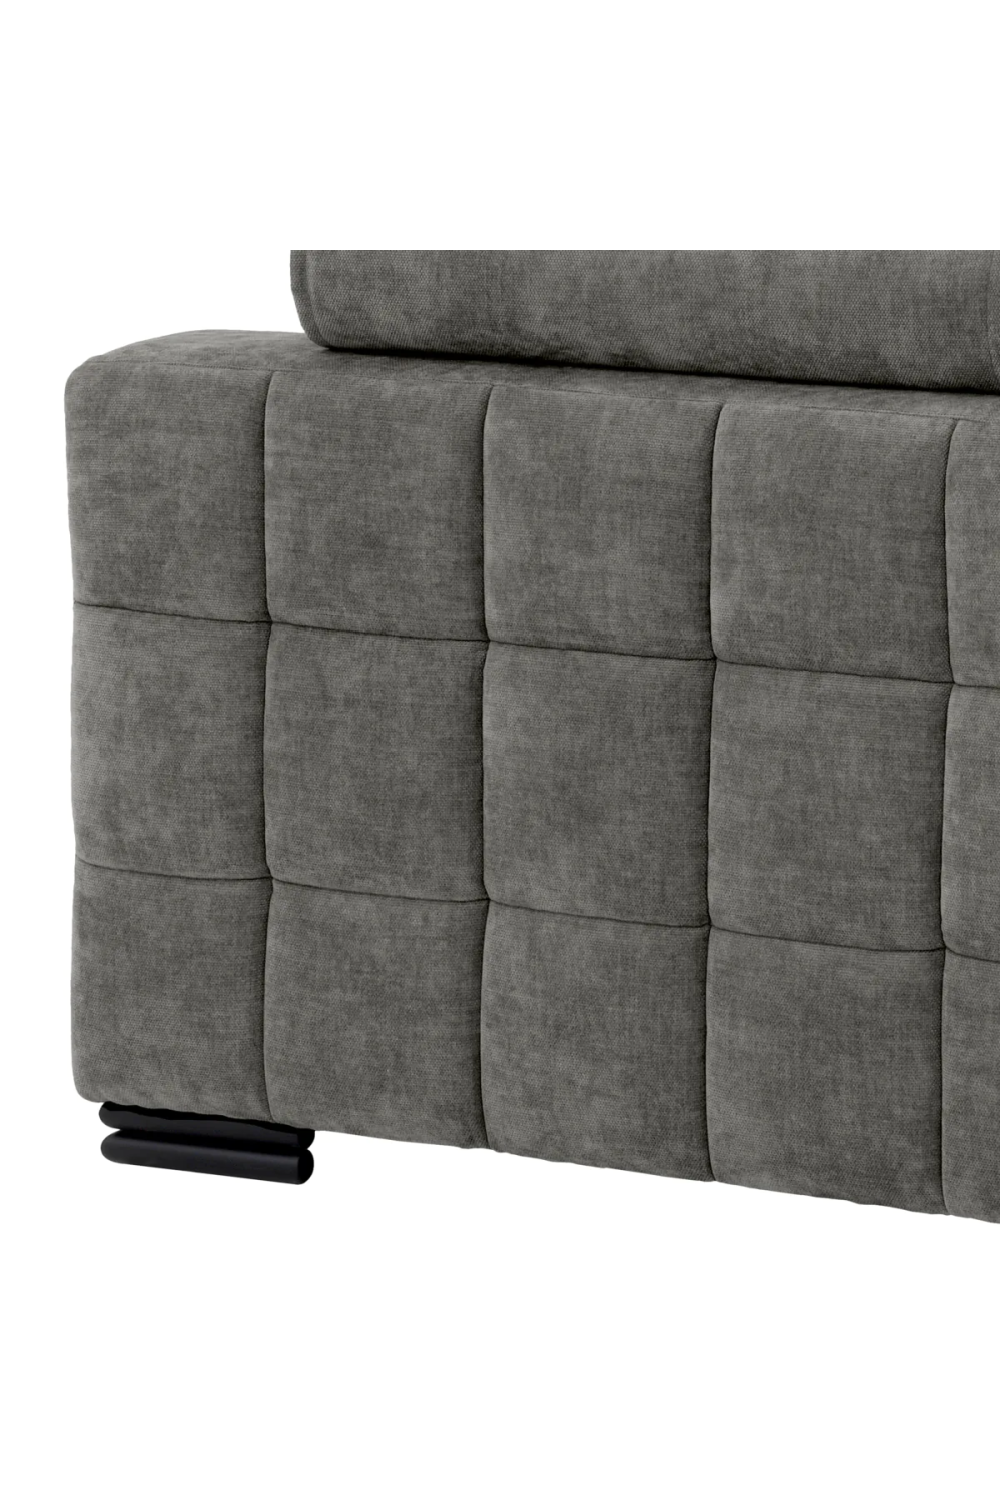 Gray Contemporary Sofa | Eichholtz Clifford | Oroa.com